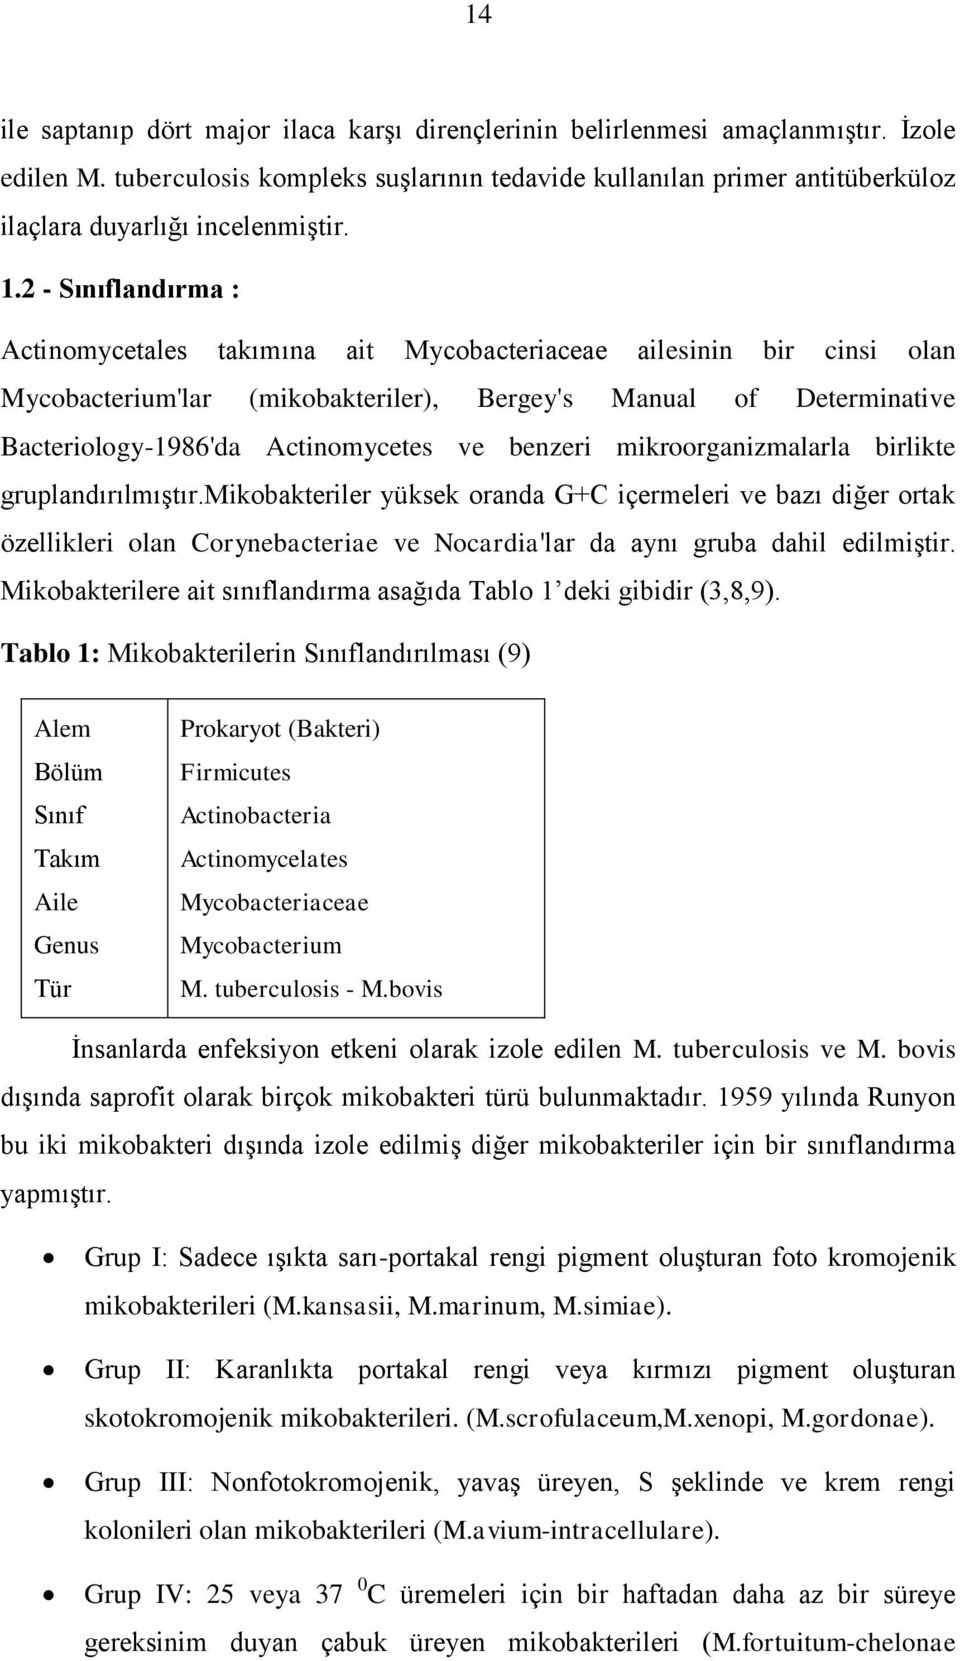 2 Sınıflandırma : Actinomycetales takımına ait Mycobacteriaceae ailesinin bir cinsi olan Mycobacterium'lar (mikobakteriler), Bergey's Manual of Determinative Bacteriology1986'da Actinomycetes ve